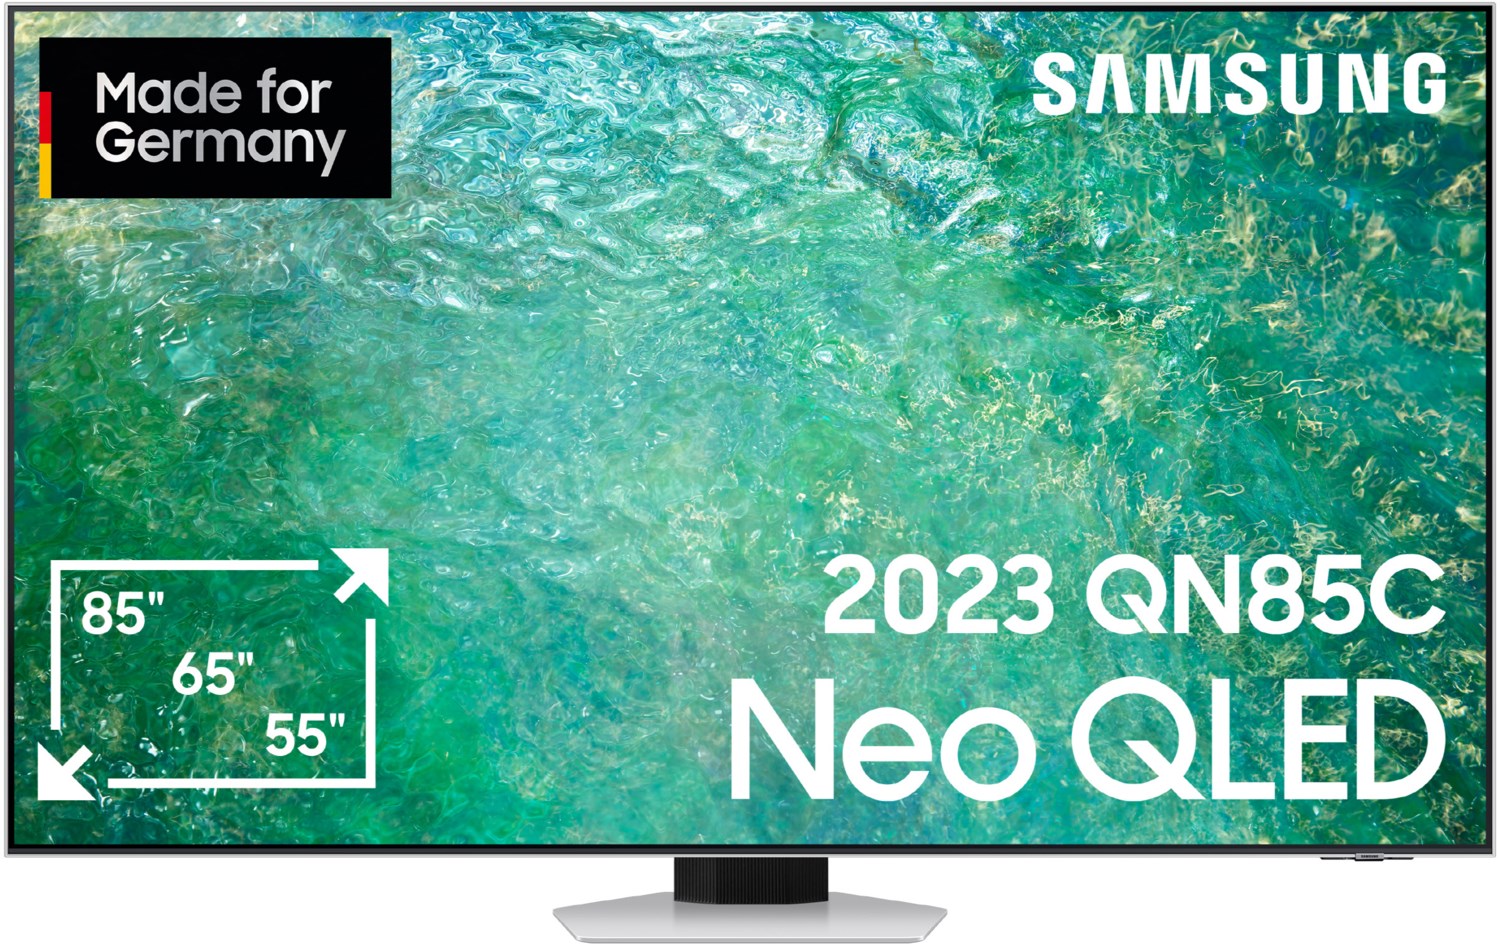 Samsung Neo QLED-TV 75 Zoll (189 cm) carbon silber von Samsung